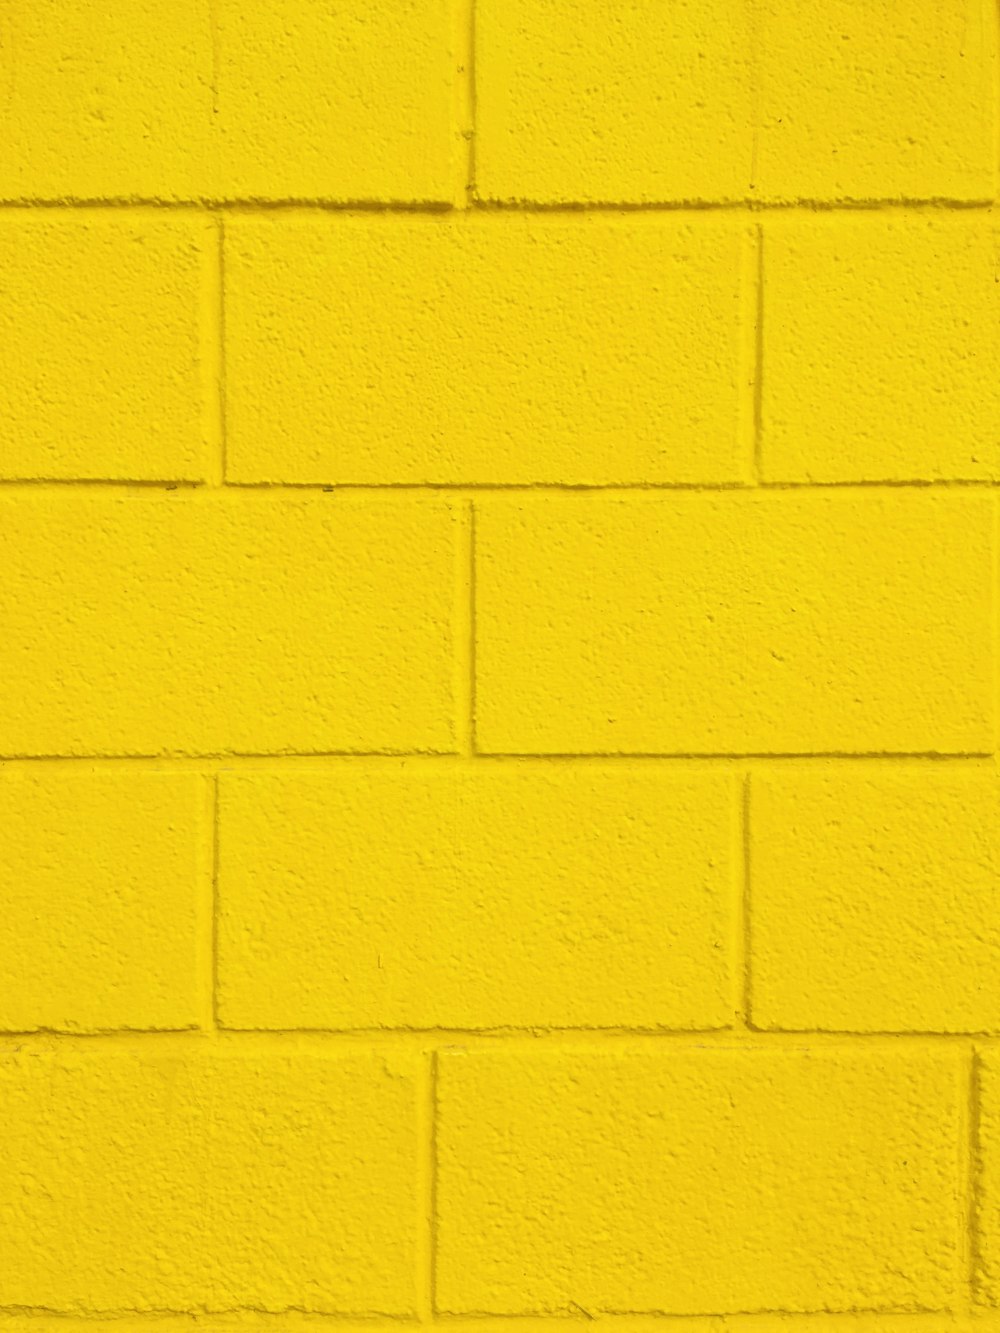 黄色のペンキで黄色に塗られた壁